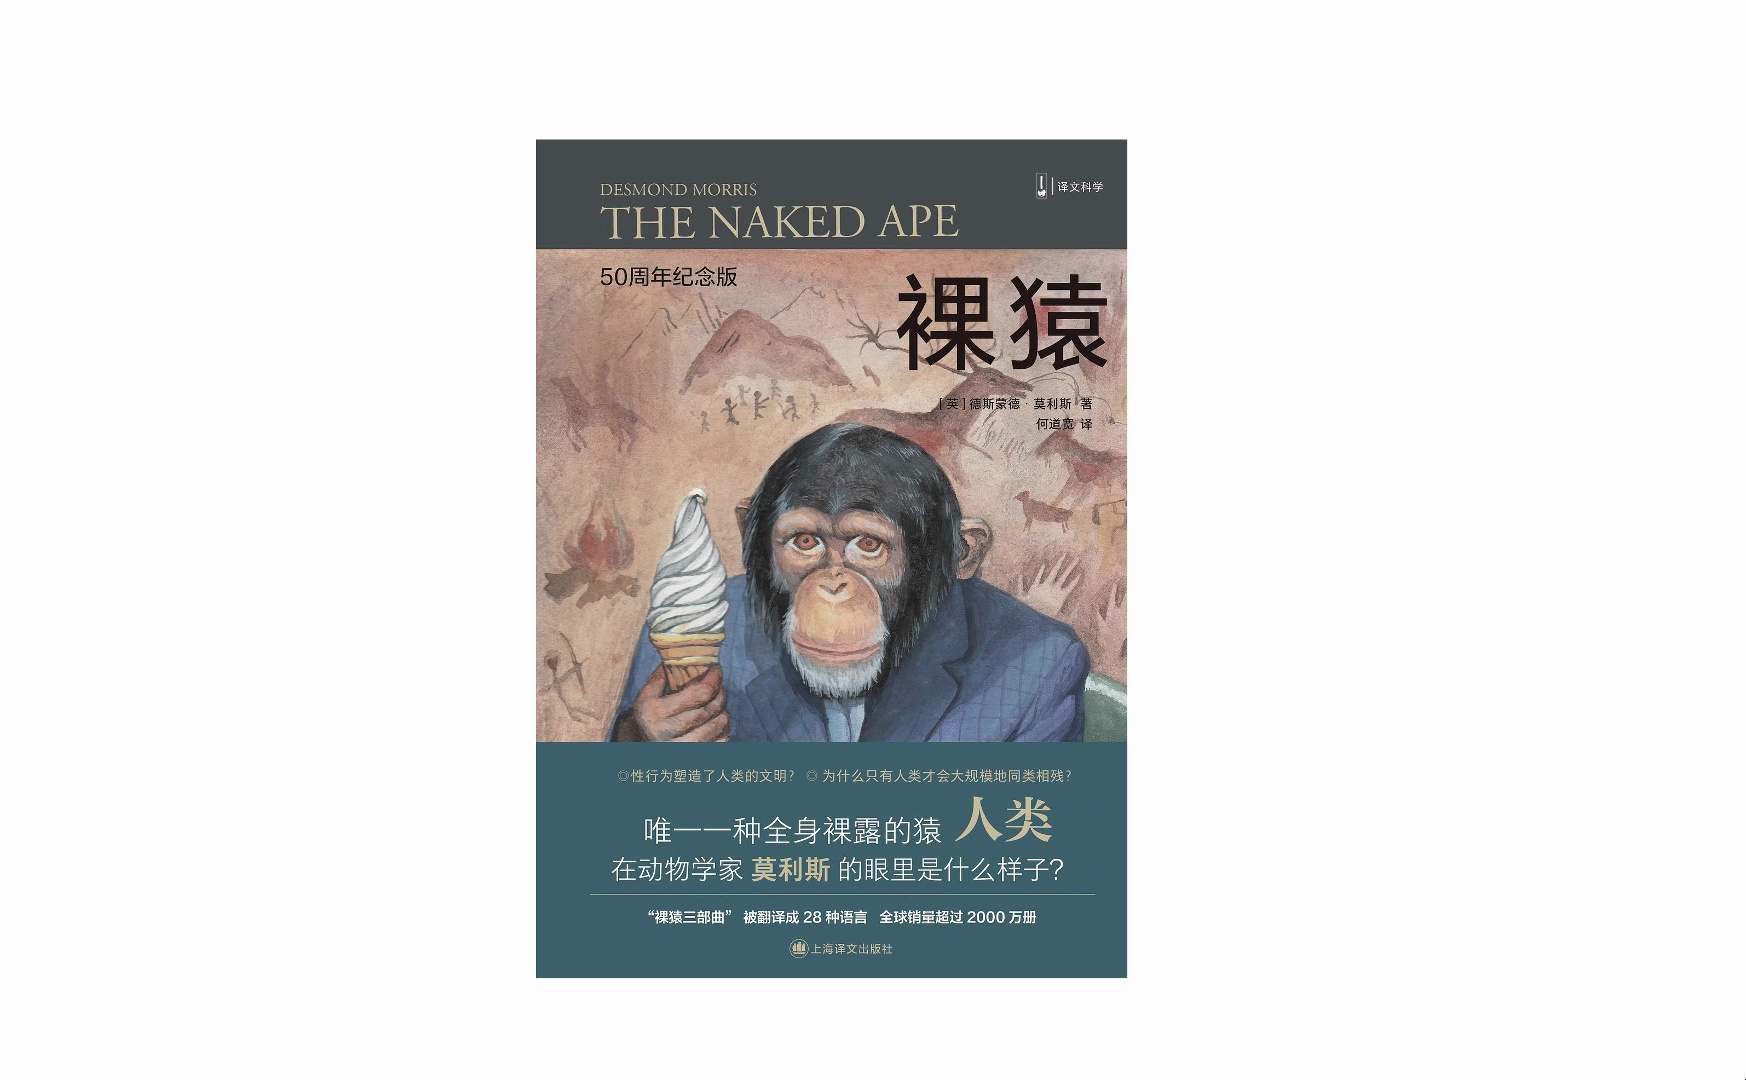 真人朗读有声书社会学/人类学系列《裸猿》 裸猿三部曲第一部在193种猿猴中，只有一种猿猴全身赤裸，他们自诩为“智人”，实际却是“裸猿”。